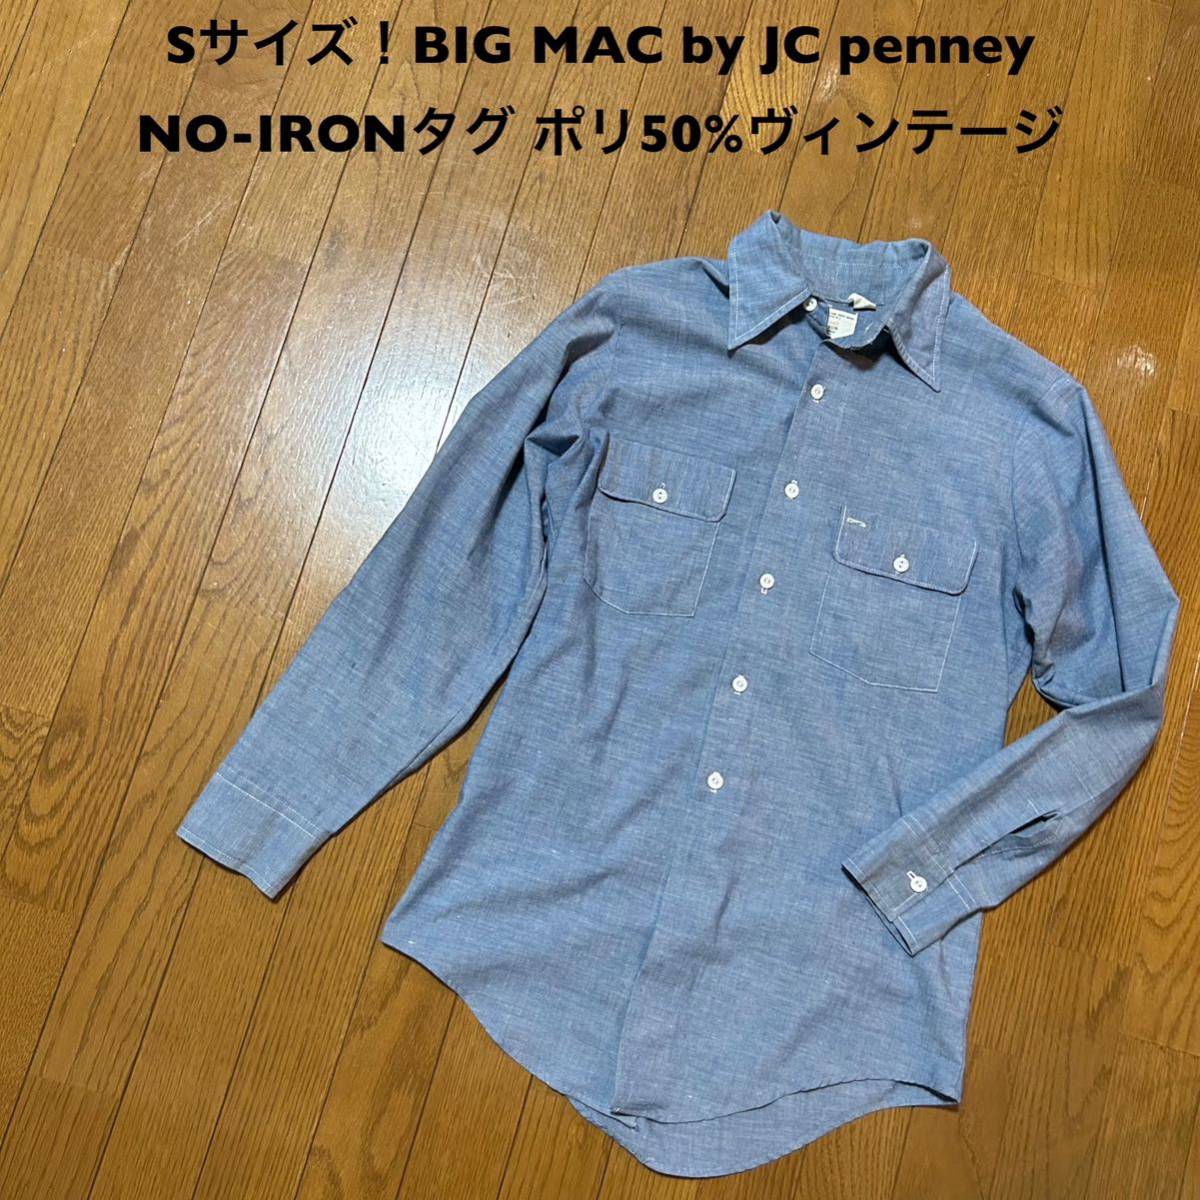 Sサイズ！BIG MAC by JC penney 古着長袖シャンブレーシャツ NO-IRONタグ ポリ50% ヴィンテージ ビッグマック JCペニー